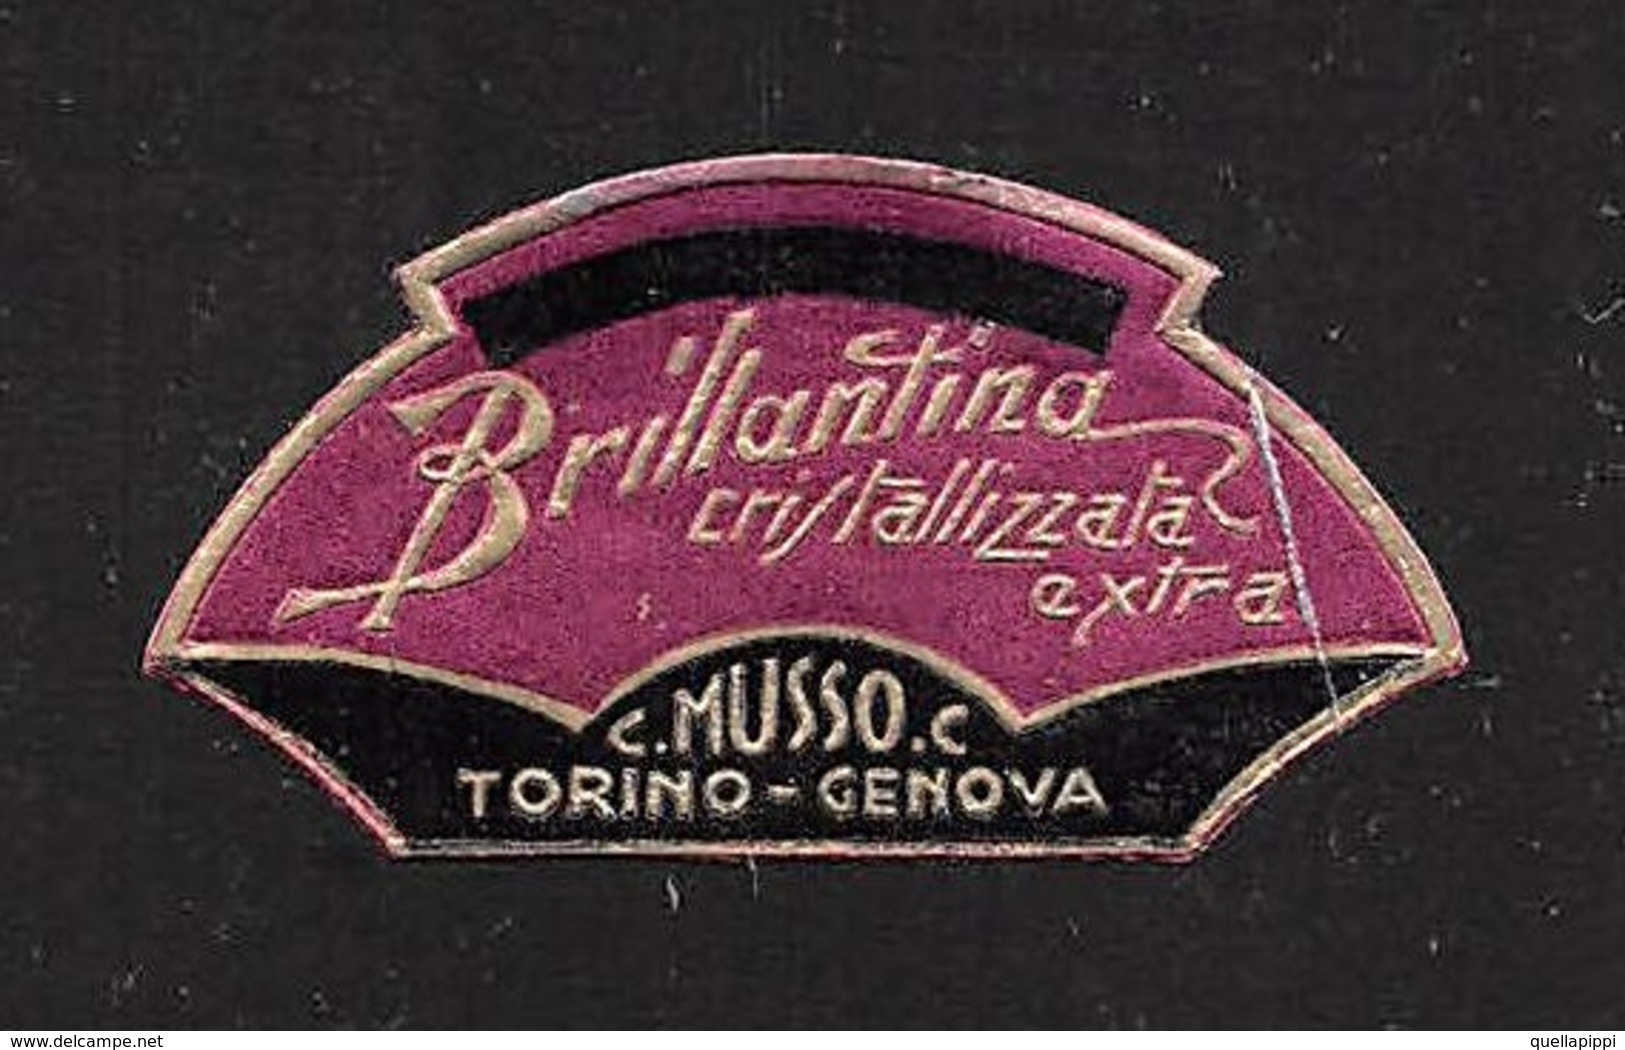 07667 "BRILLANTINA CRISTALLIZZATA EXTRA - C. MUSSO C. - TORINO-GENOVA - 1920 CIRCA" ETICHETTA  ORIGINALE - Etichette